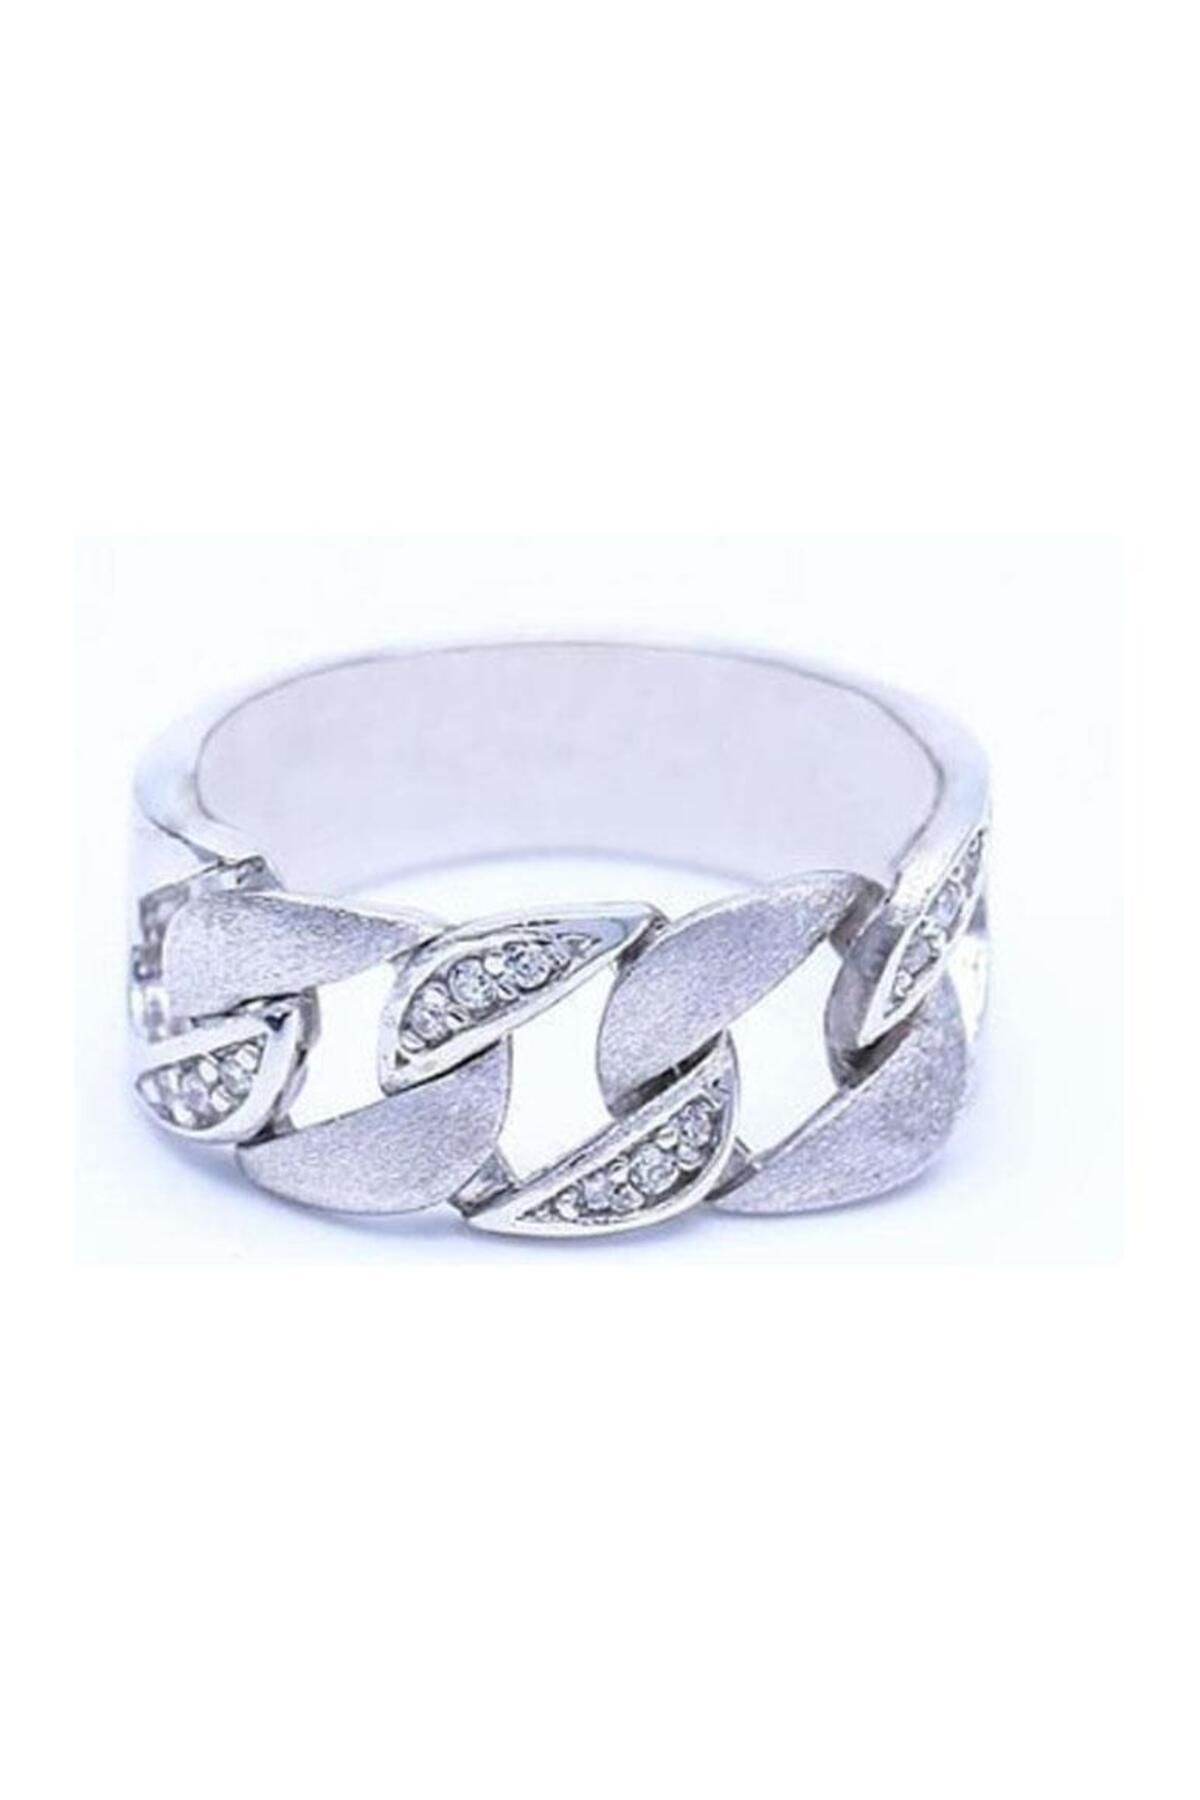 Neva Jewelry 925 Ayar Tasarım Zincir Ezme Modelli Zirkon Taşlı Gümüş Yüzük